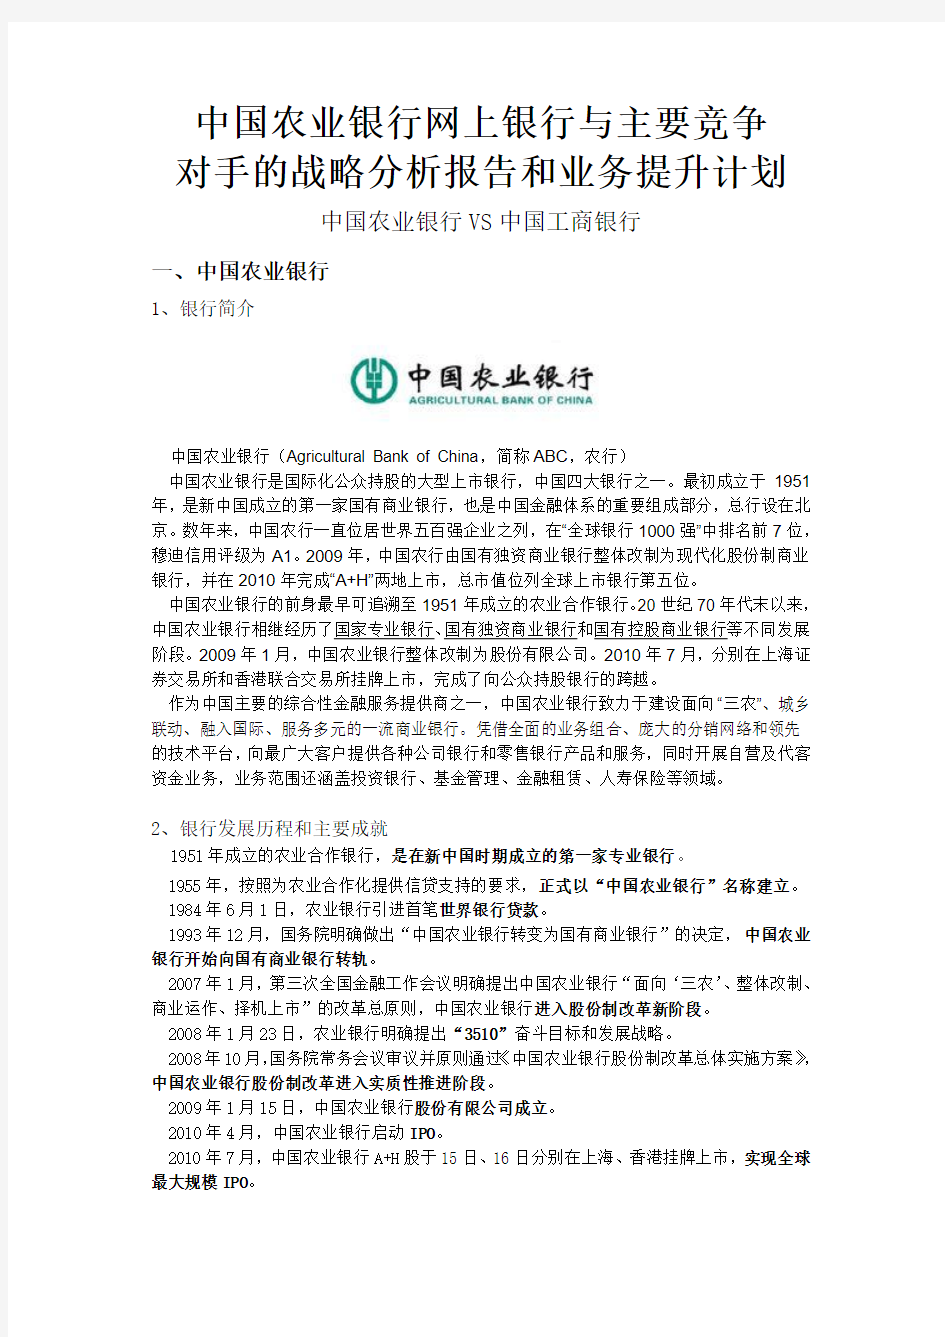 中国农业银行网上银行分析报告